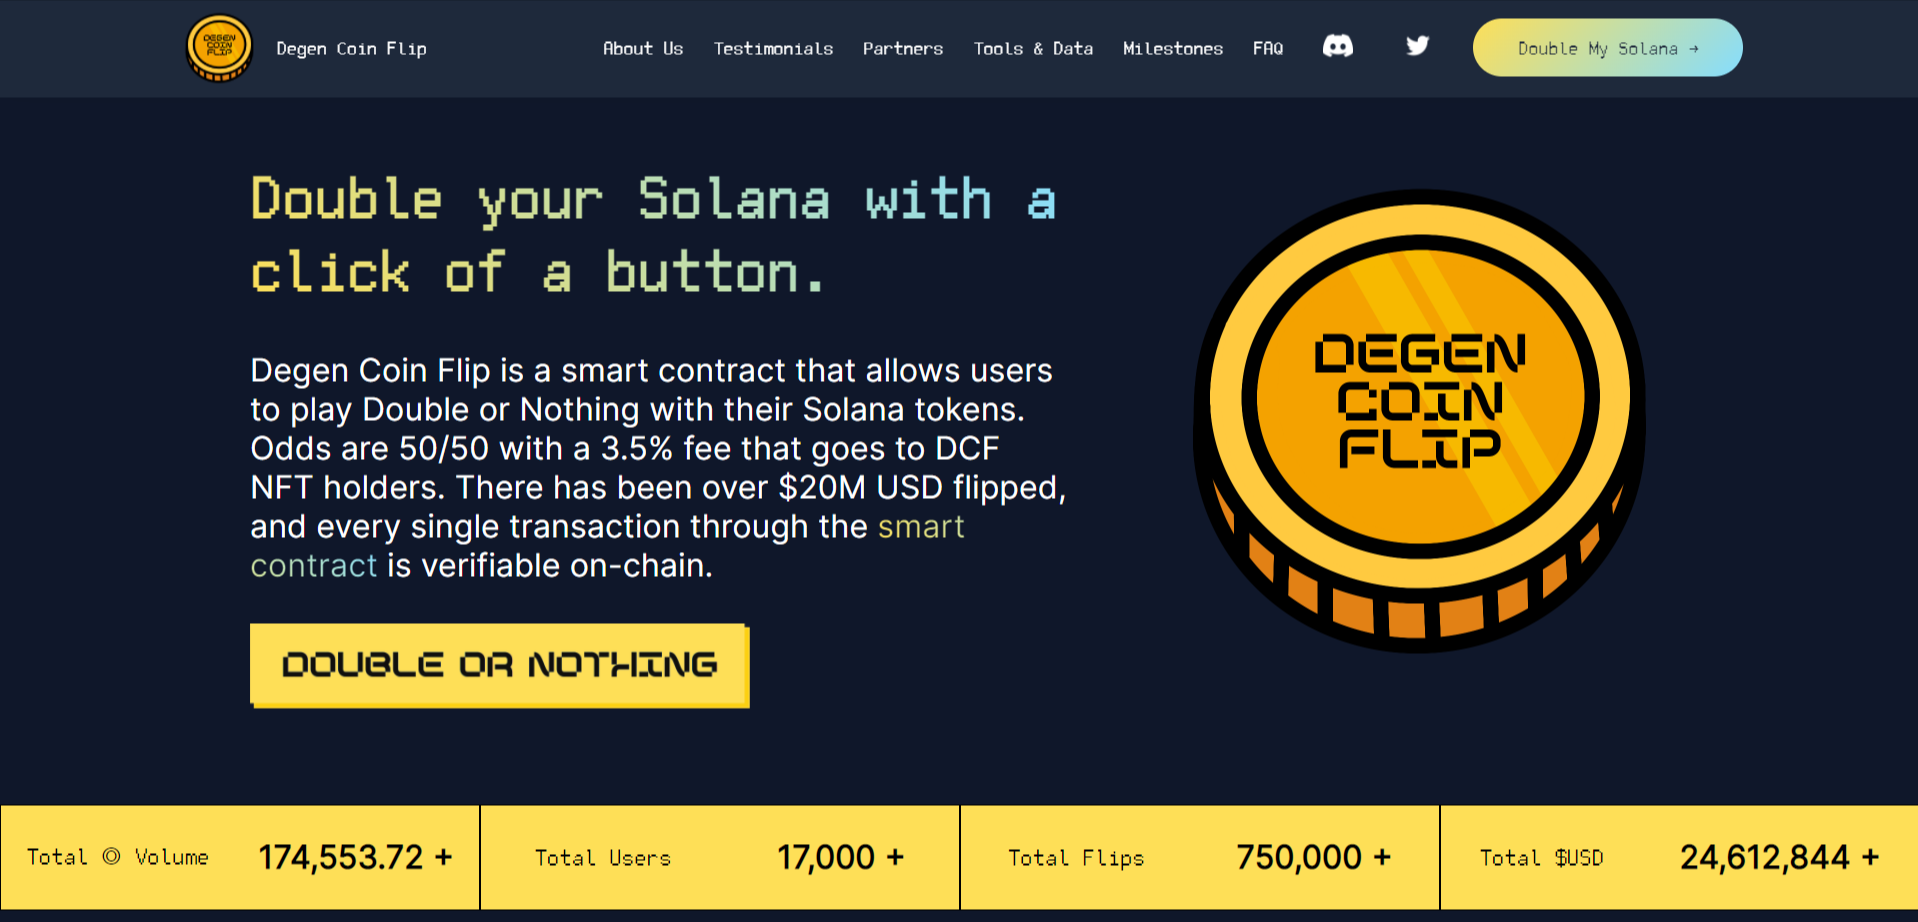 About Degen Coin Flip Website